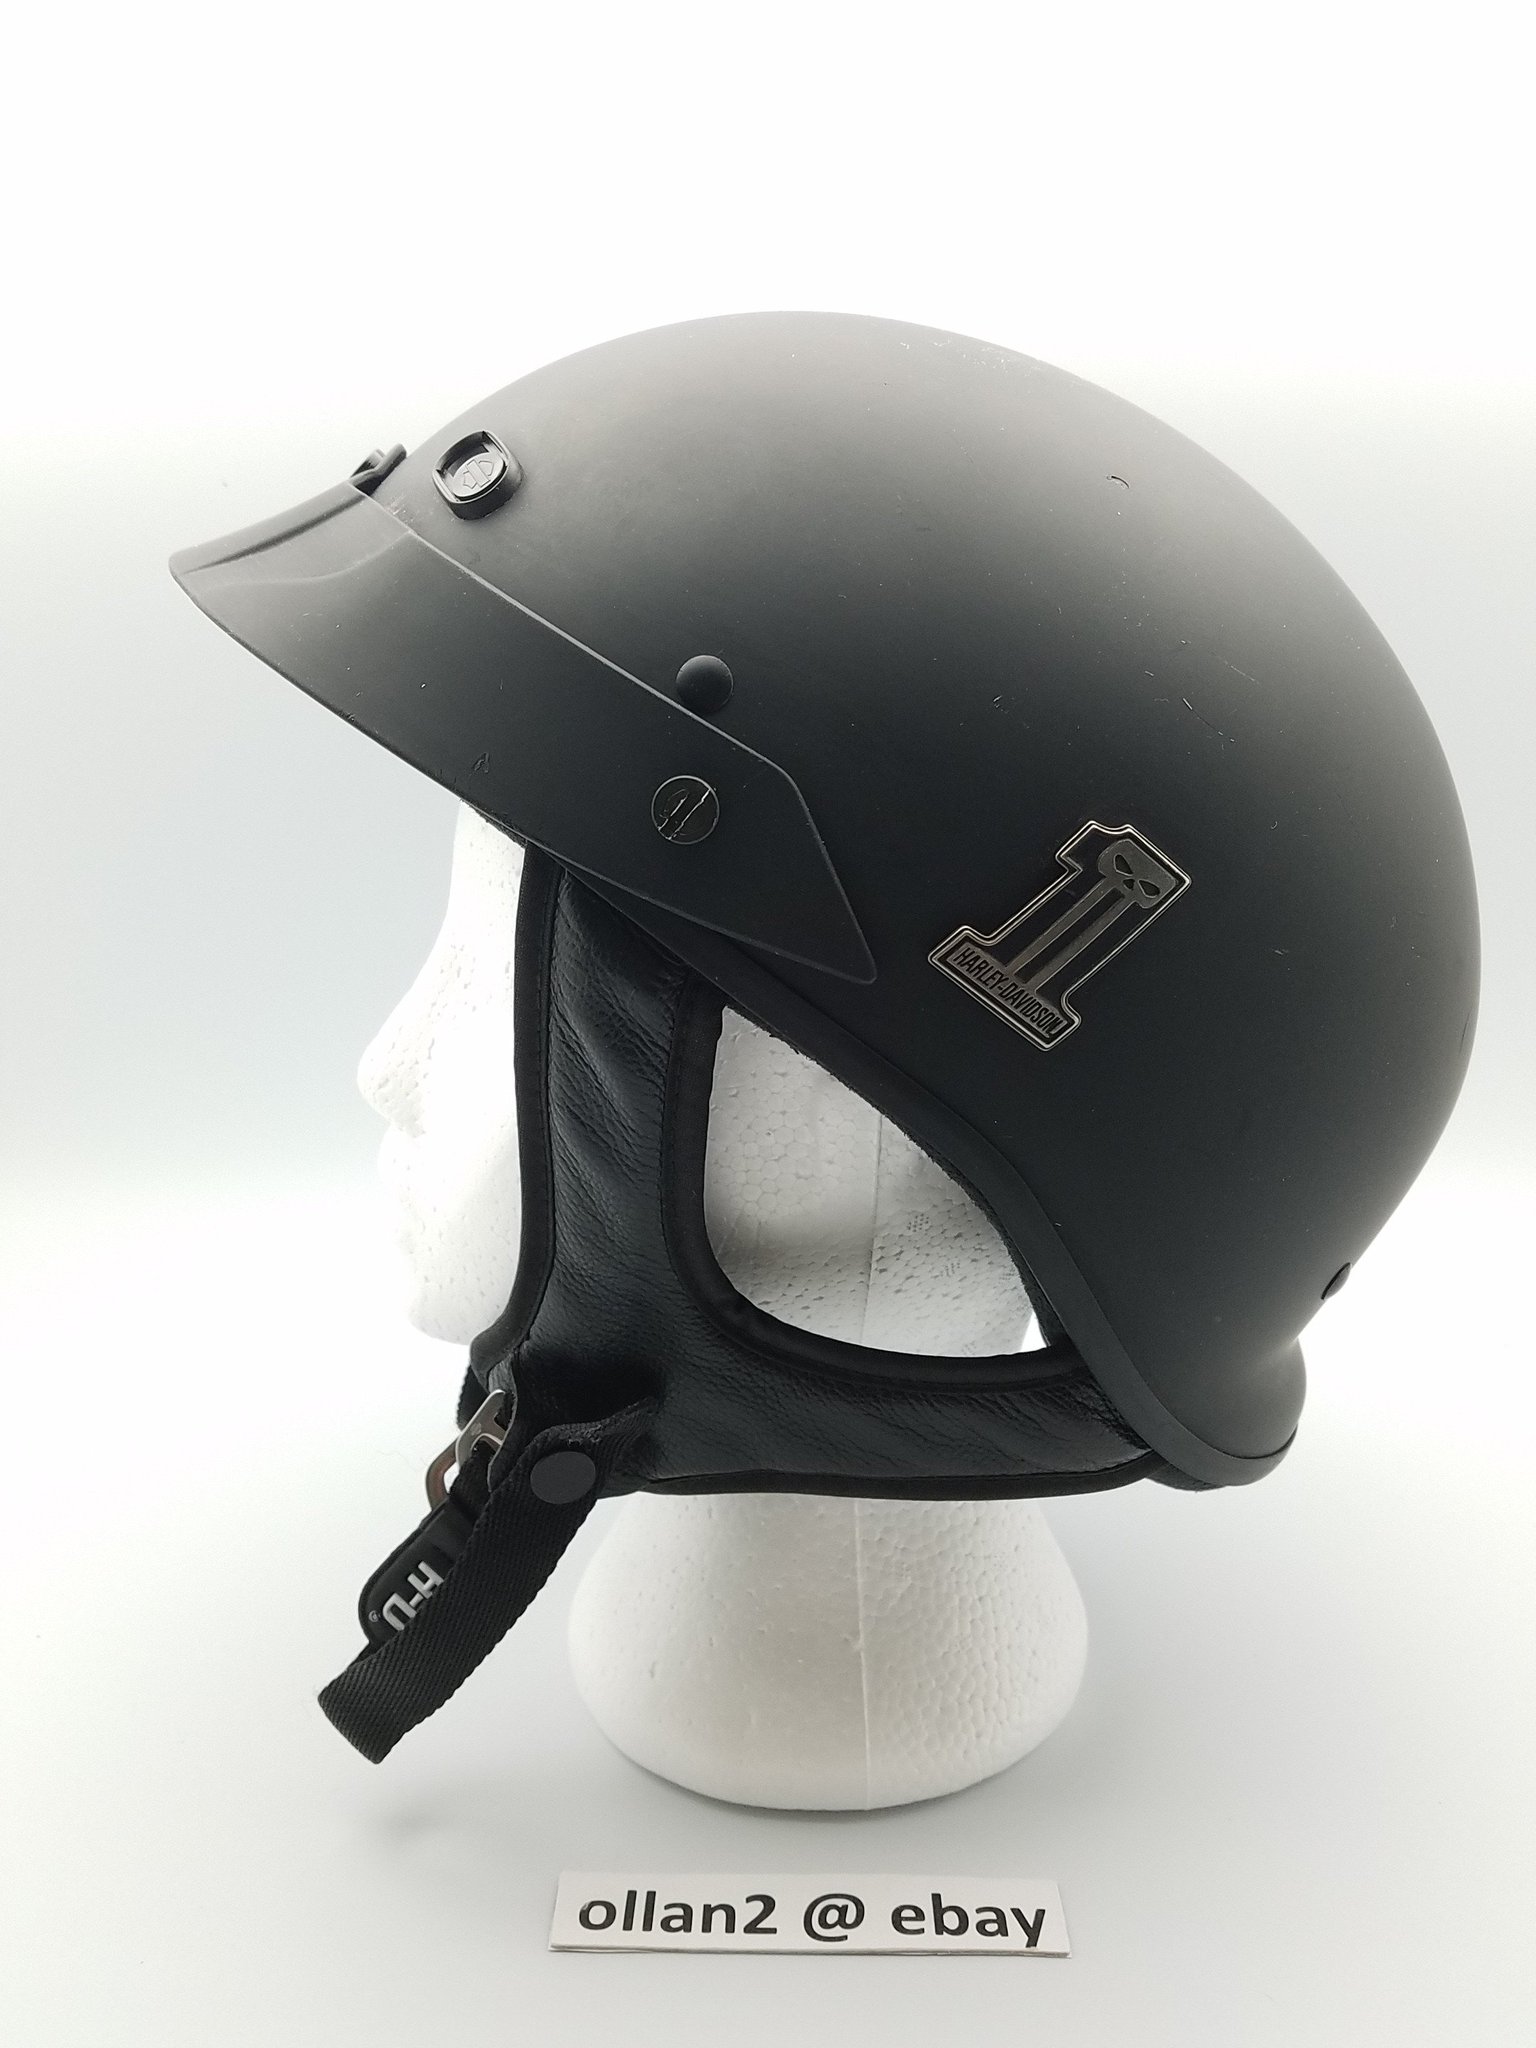 Ollan Agtual On Twitter Harley Davidson Helmet 1 Hybrid Ultra Light Spoiler Half Helmet Size Medium Kbc Harleydavidson Https T Co E4tqcsokj8 Via Ebay Https T Co Mthka6tx0o